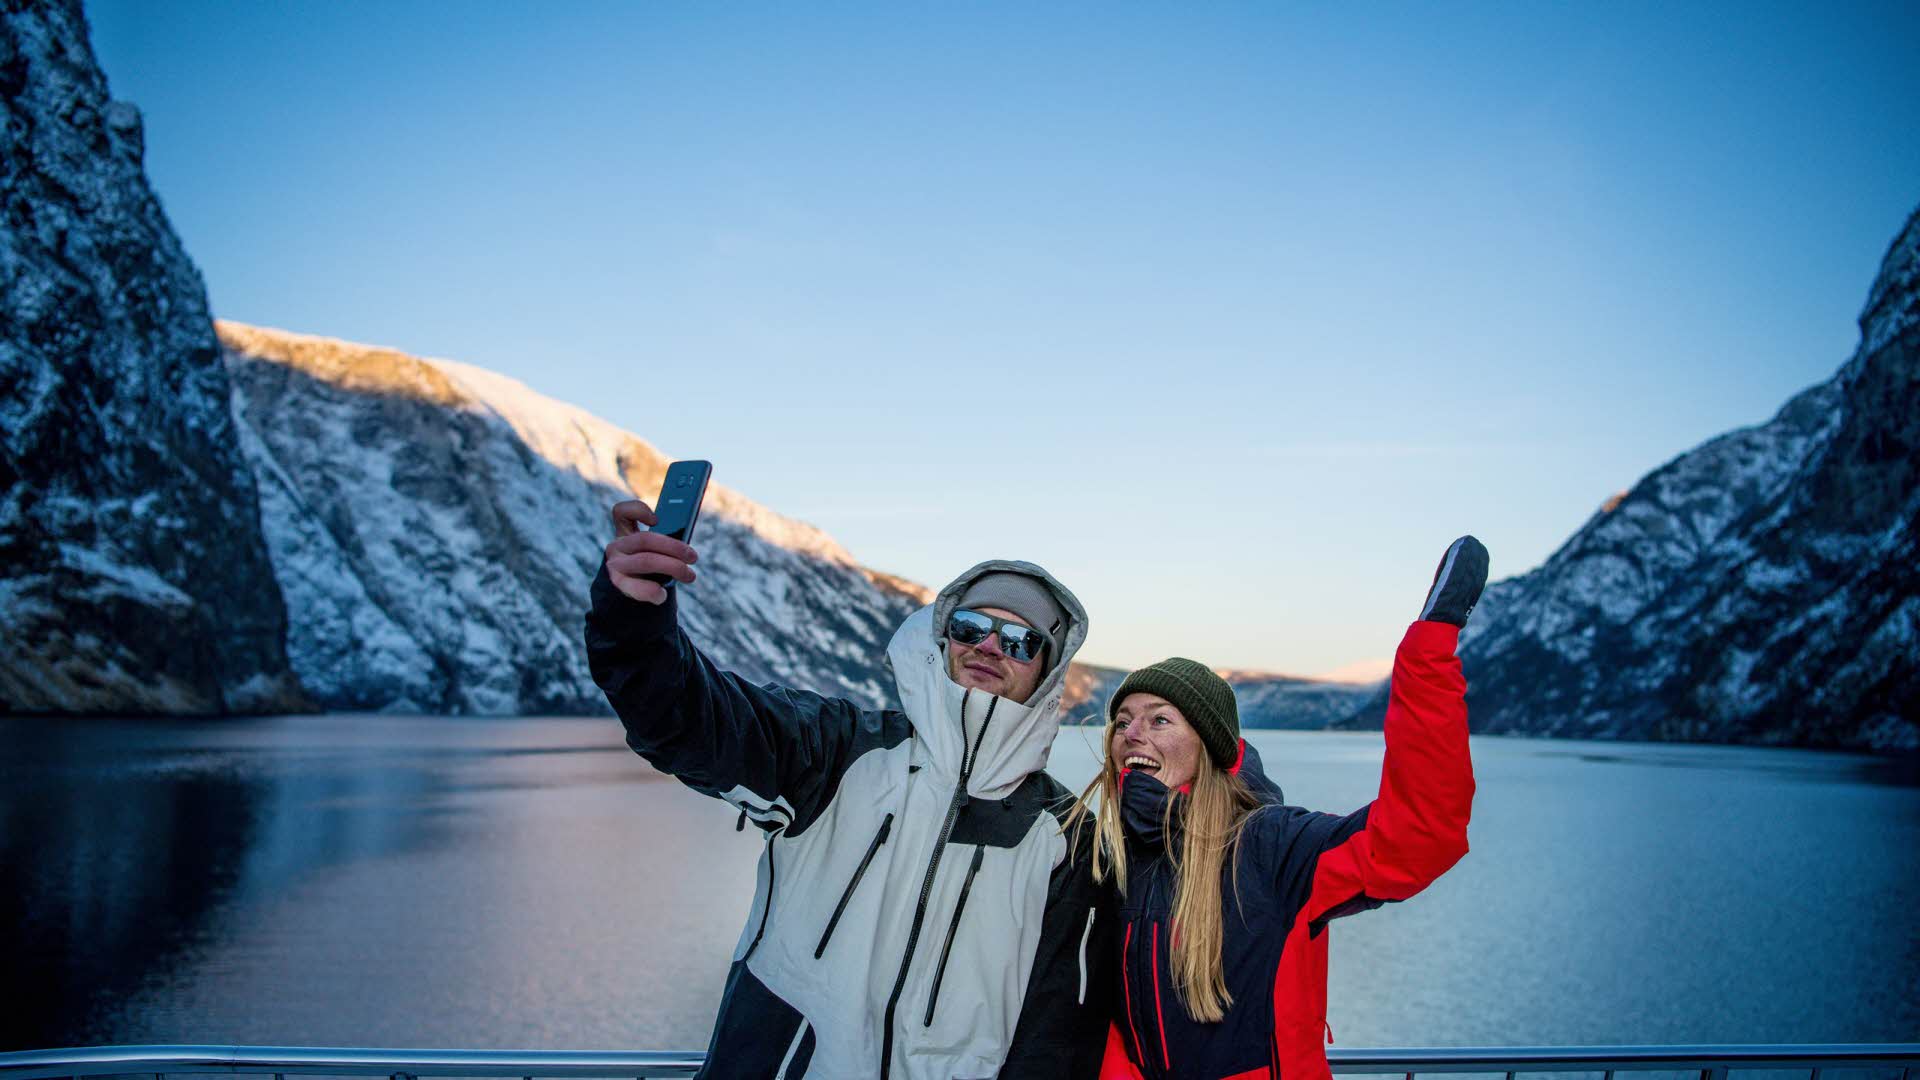 冬天蓝色的纳柔依峡湾 (Nærøyfjorden) 里，一个男孩和一个女孩在峡湾游轮上自拍